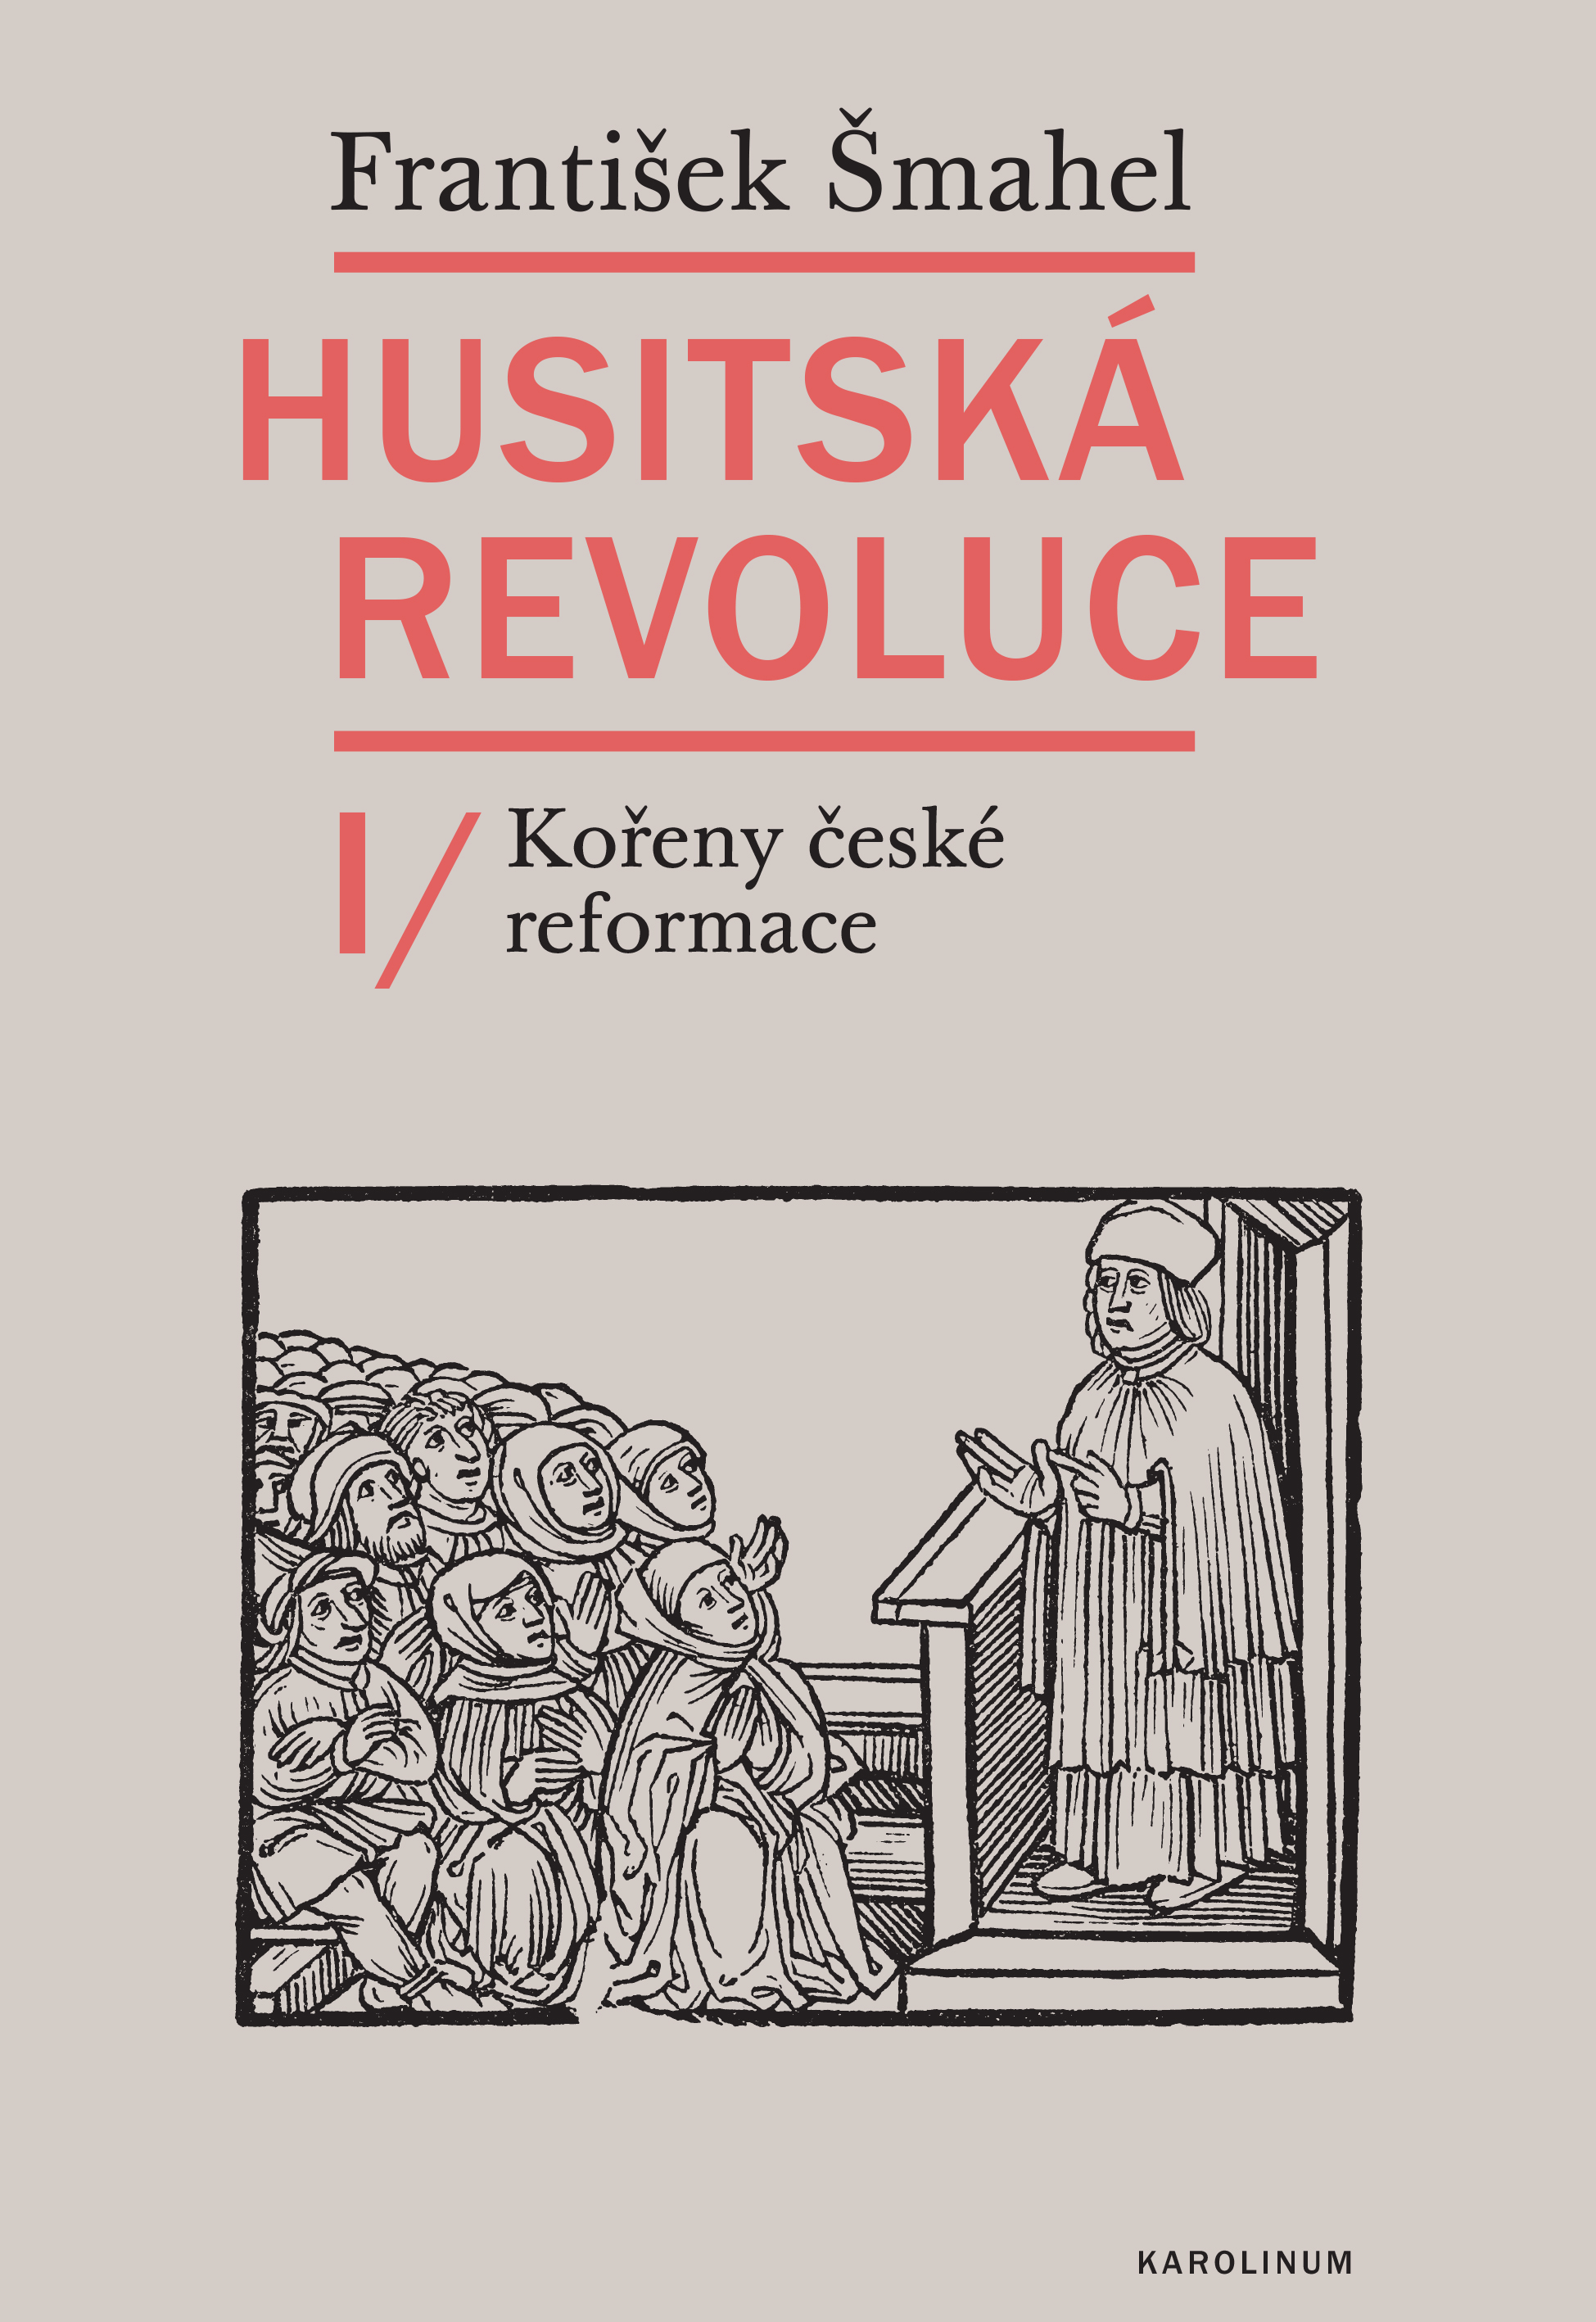 Husitska revoluce